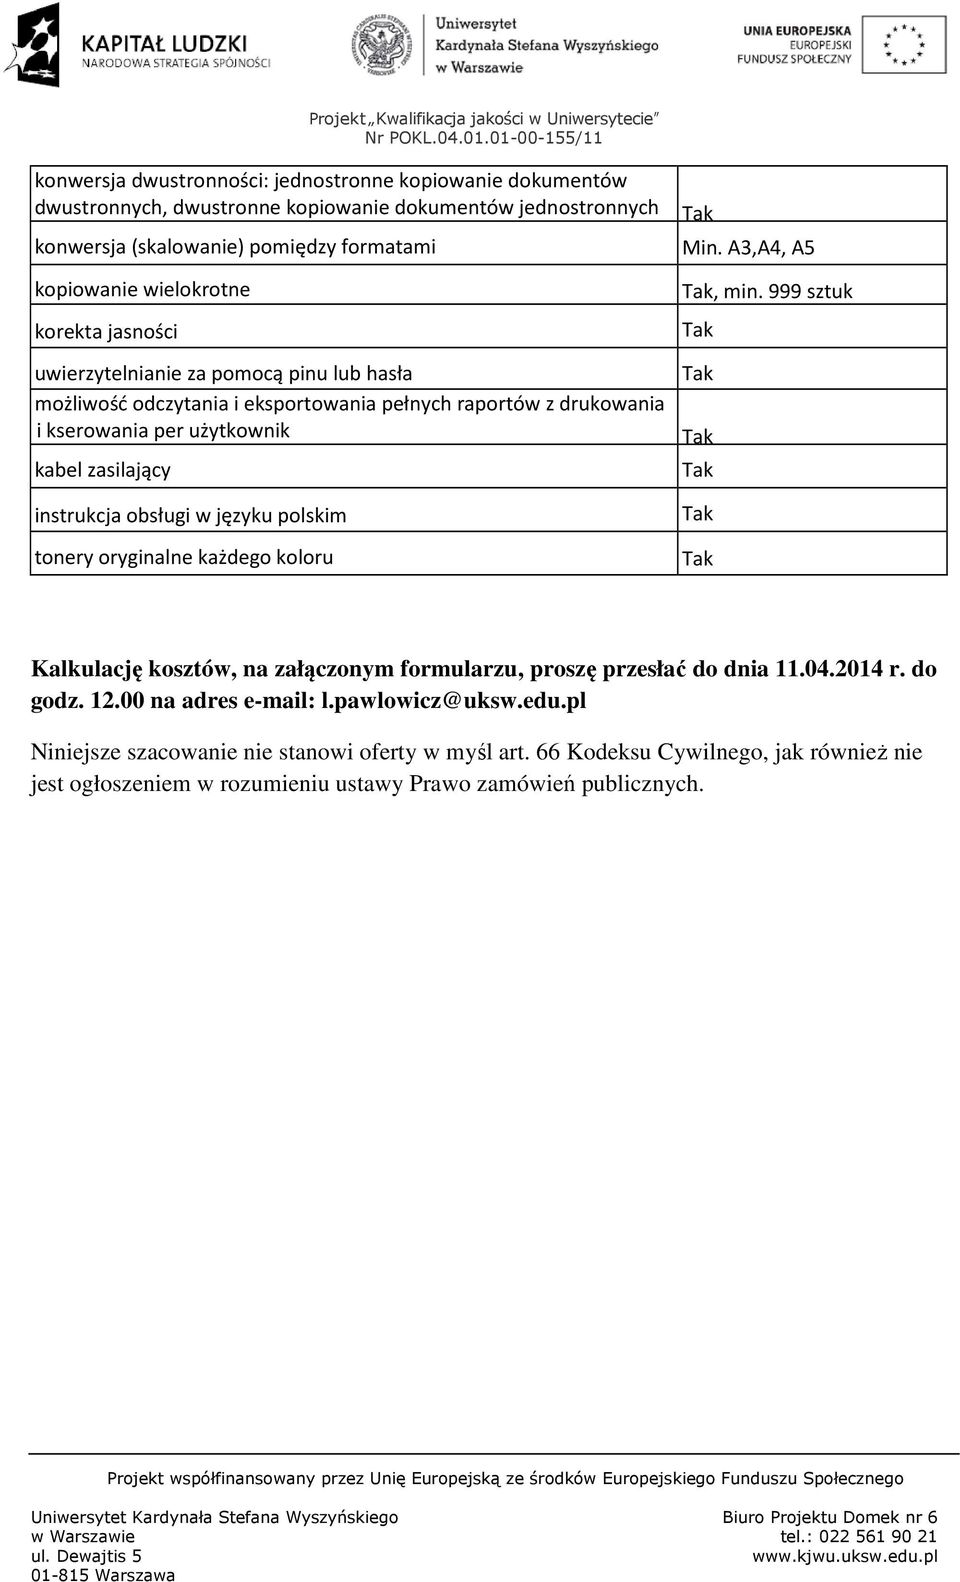 A3,A4, A5, min. 999 sztuk instrukcja obsługi w języku polskim tonery oryginalne każdego koloru Kalkulację kosztów, na załączonym formularzu, proszę przesłać do dnia 11.04.2014 r. do godz.